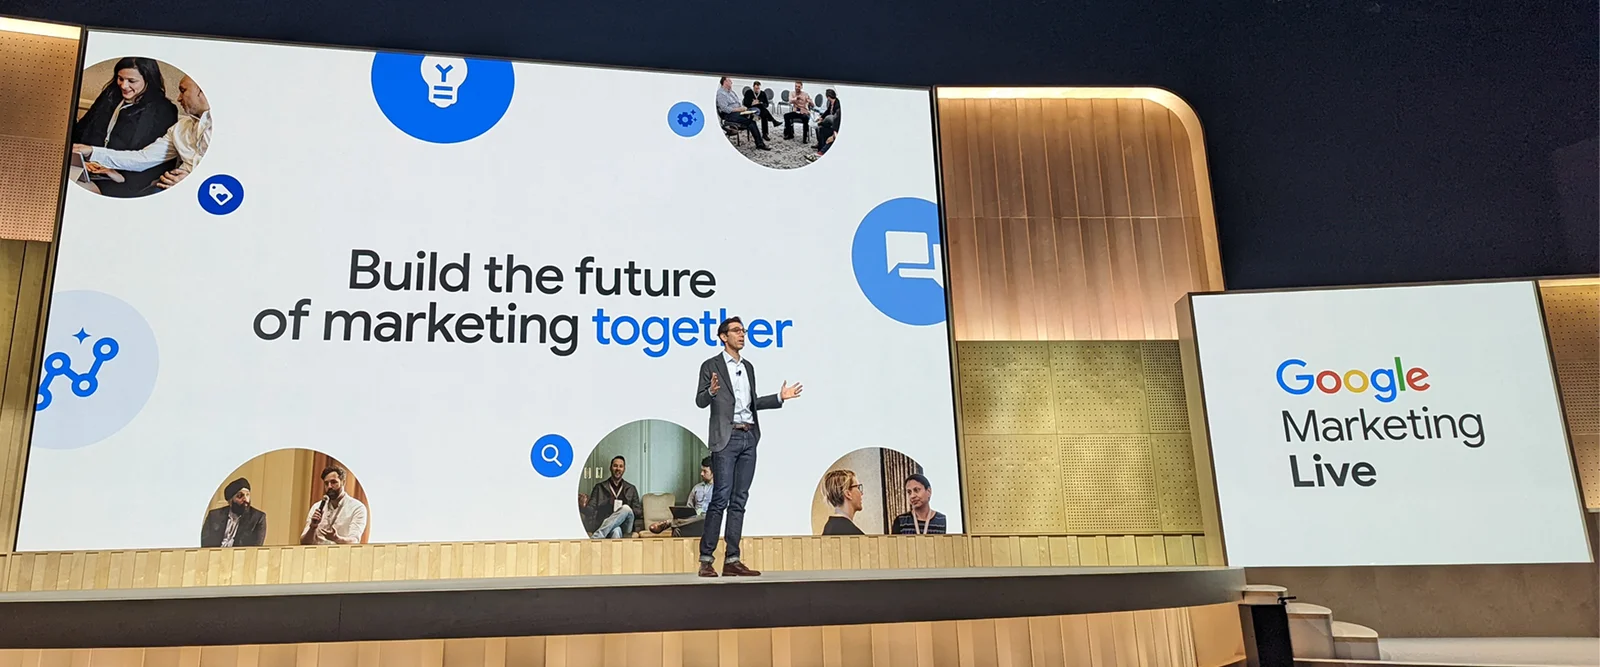 Google's UVP (proposta única de valor) expressa durante sua conferência de marketing.